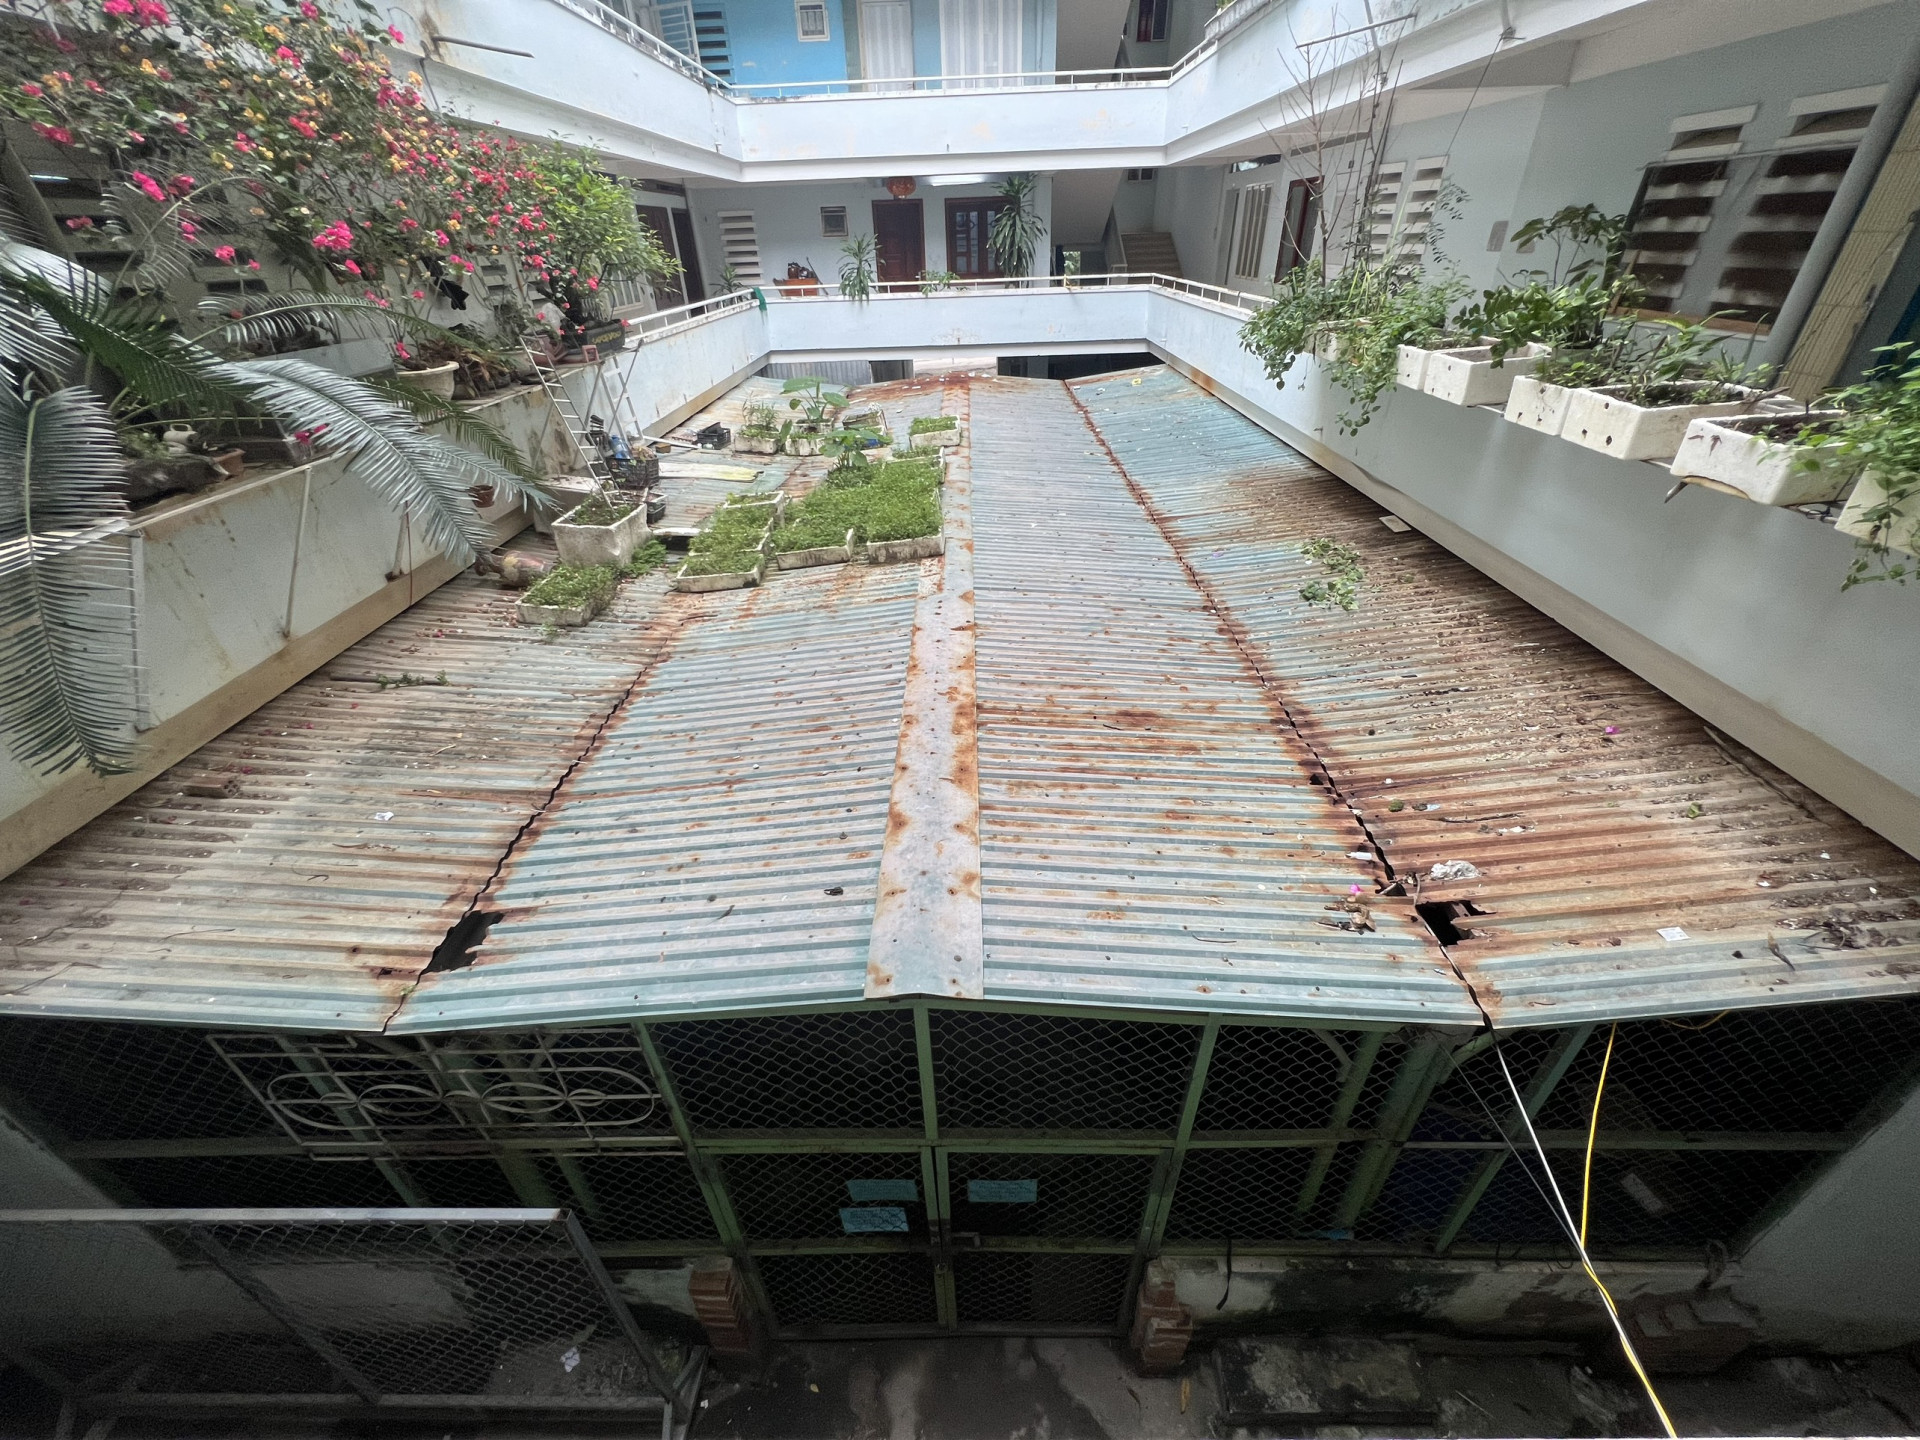 Sân sinh hoạt chung tại Chung cư Bình Phú 1 bị tận dụng làm nhà giữ xe, cản trở công tác phòng cháy chữa cháy.